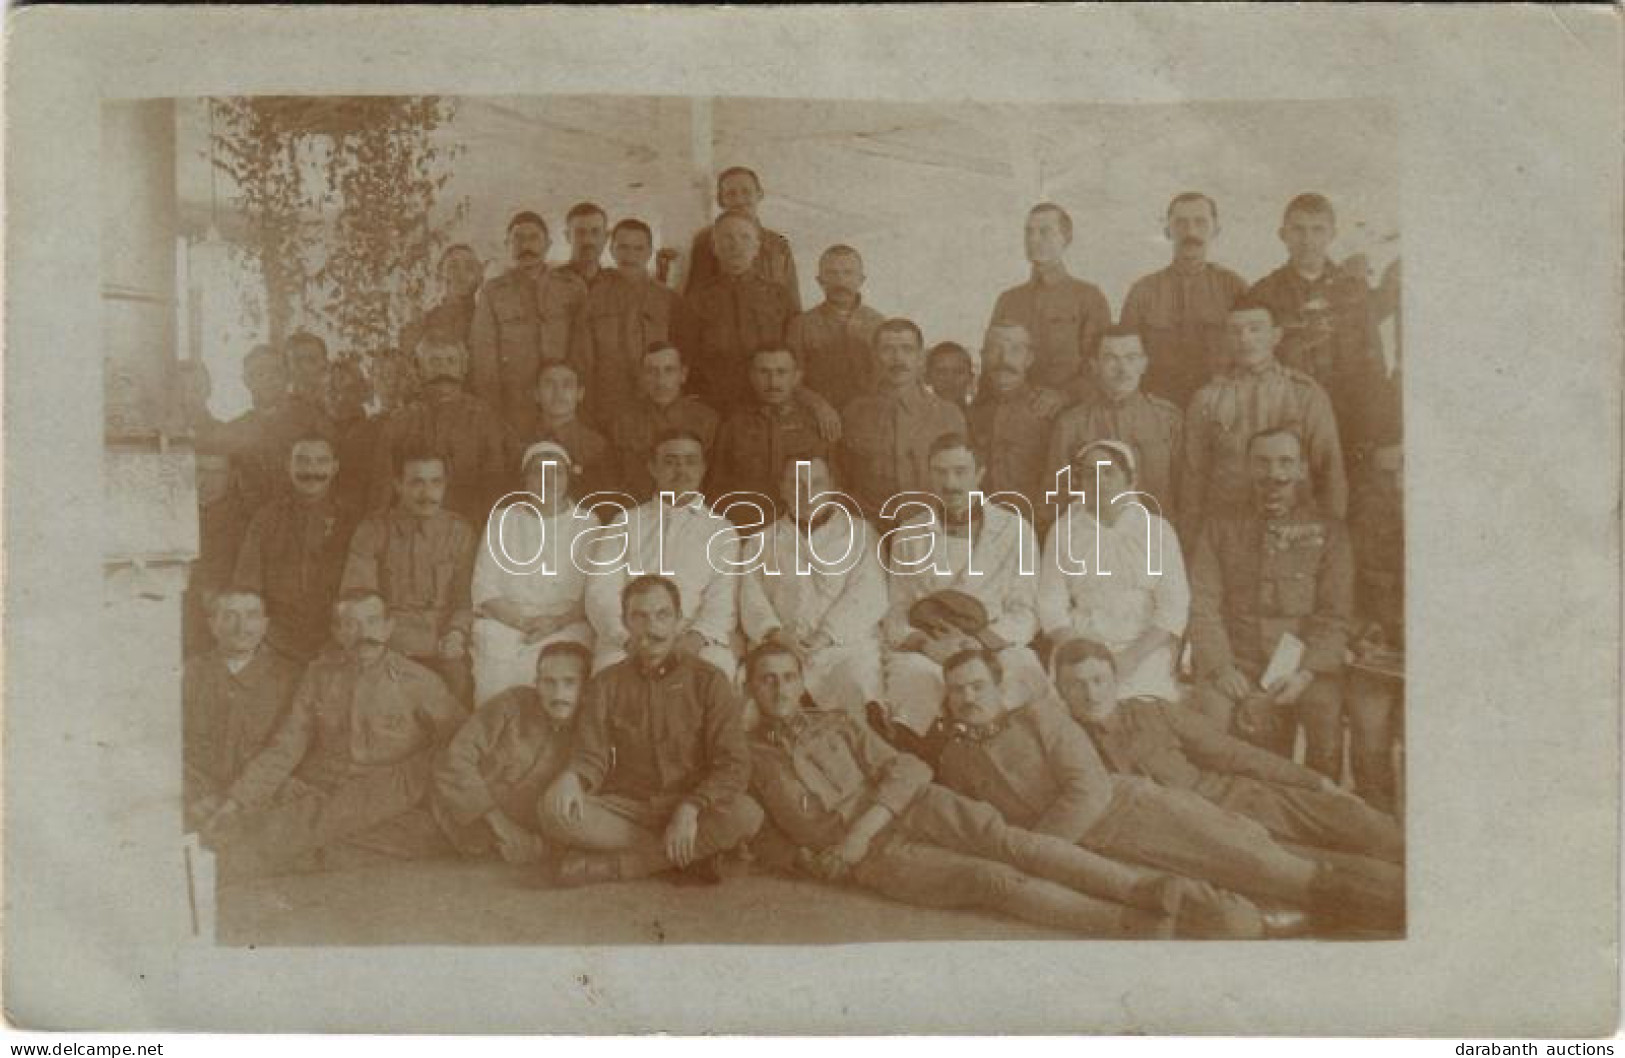 * T2/T3 1918 Besztercebánya, Banská Bystrica; Osztrák-magyar Katonai Kórház, Orvosok, Nővérek és Katonák Csoportképe / W - Zonder Classificatie